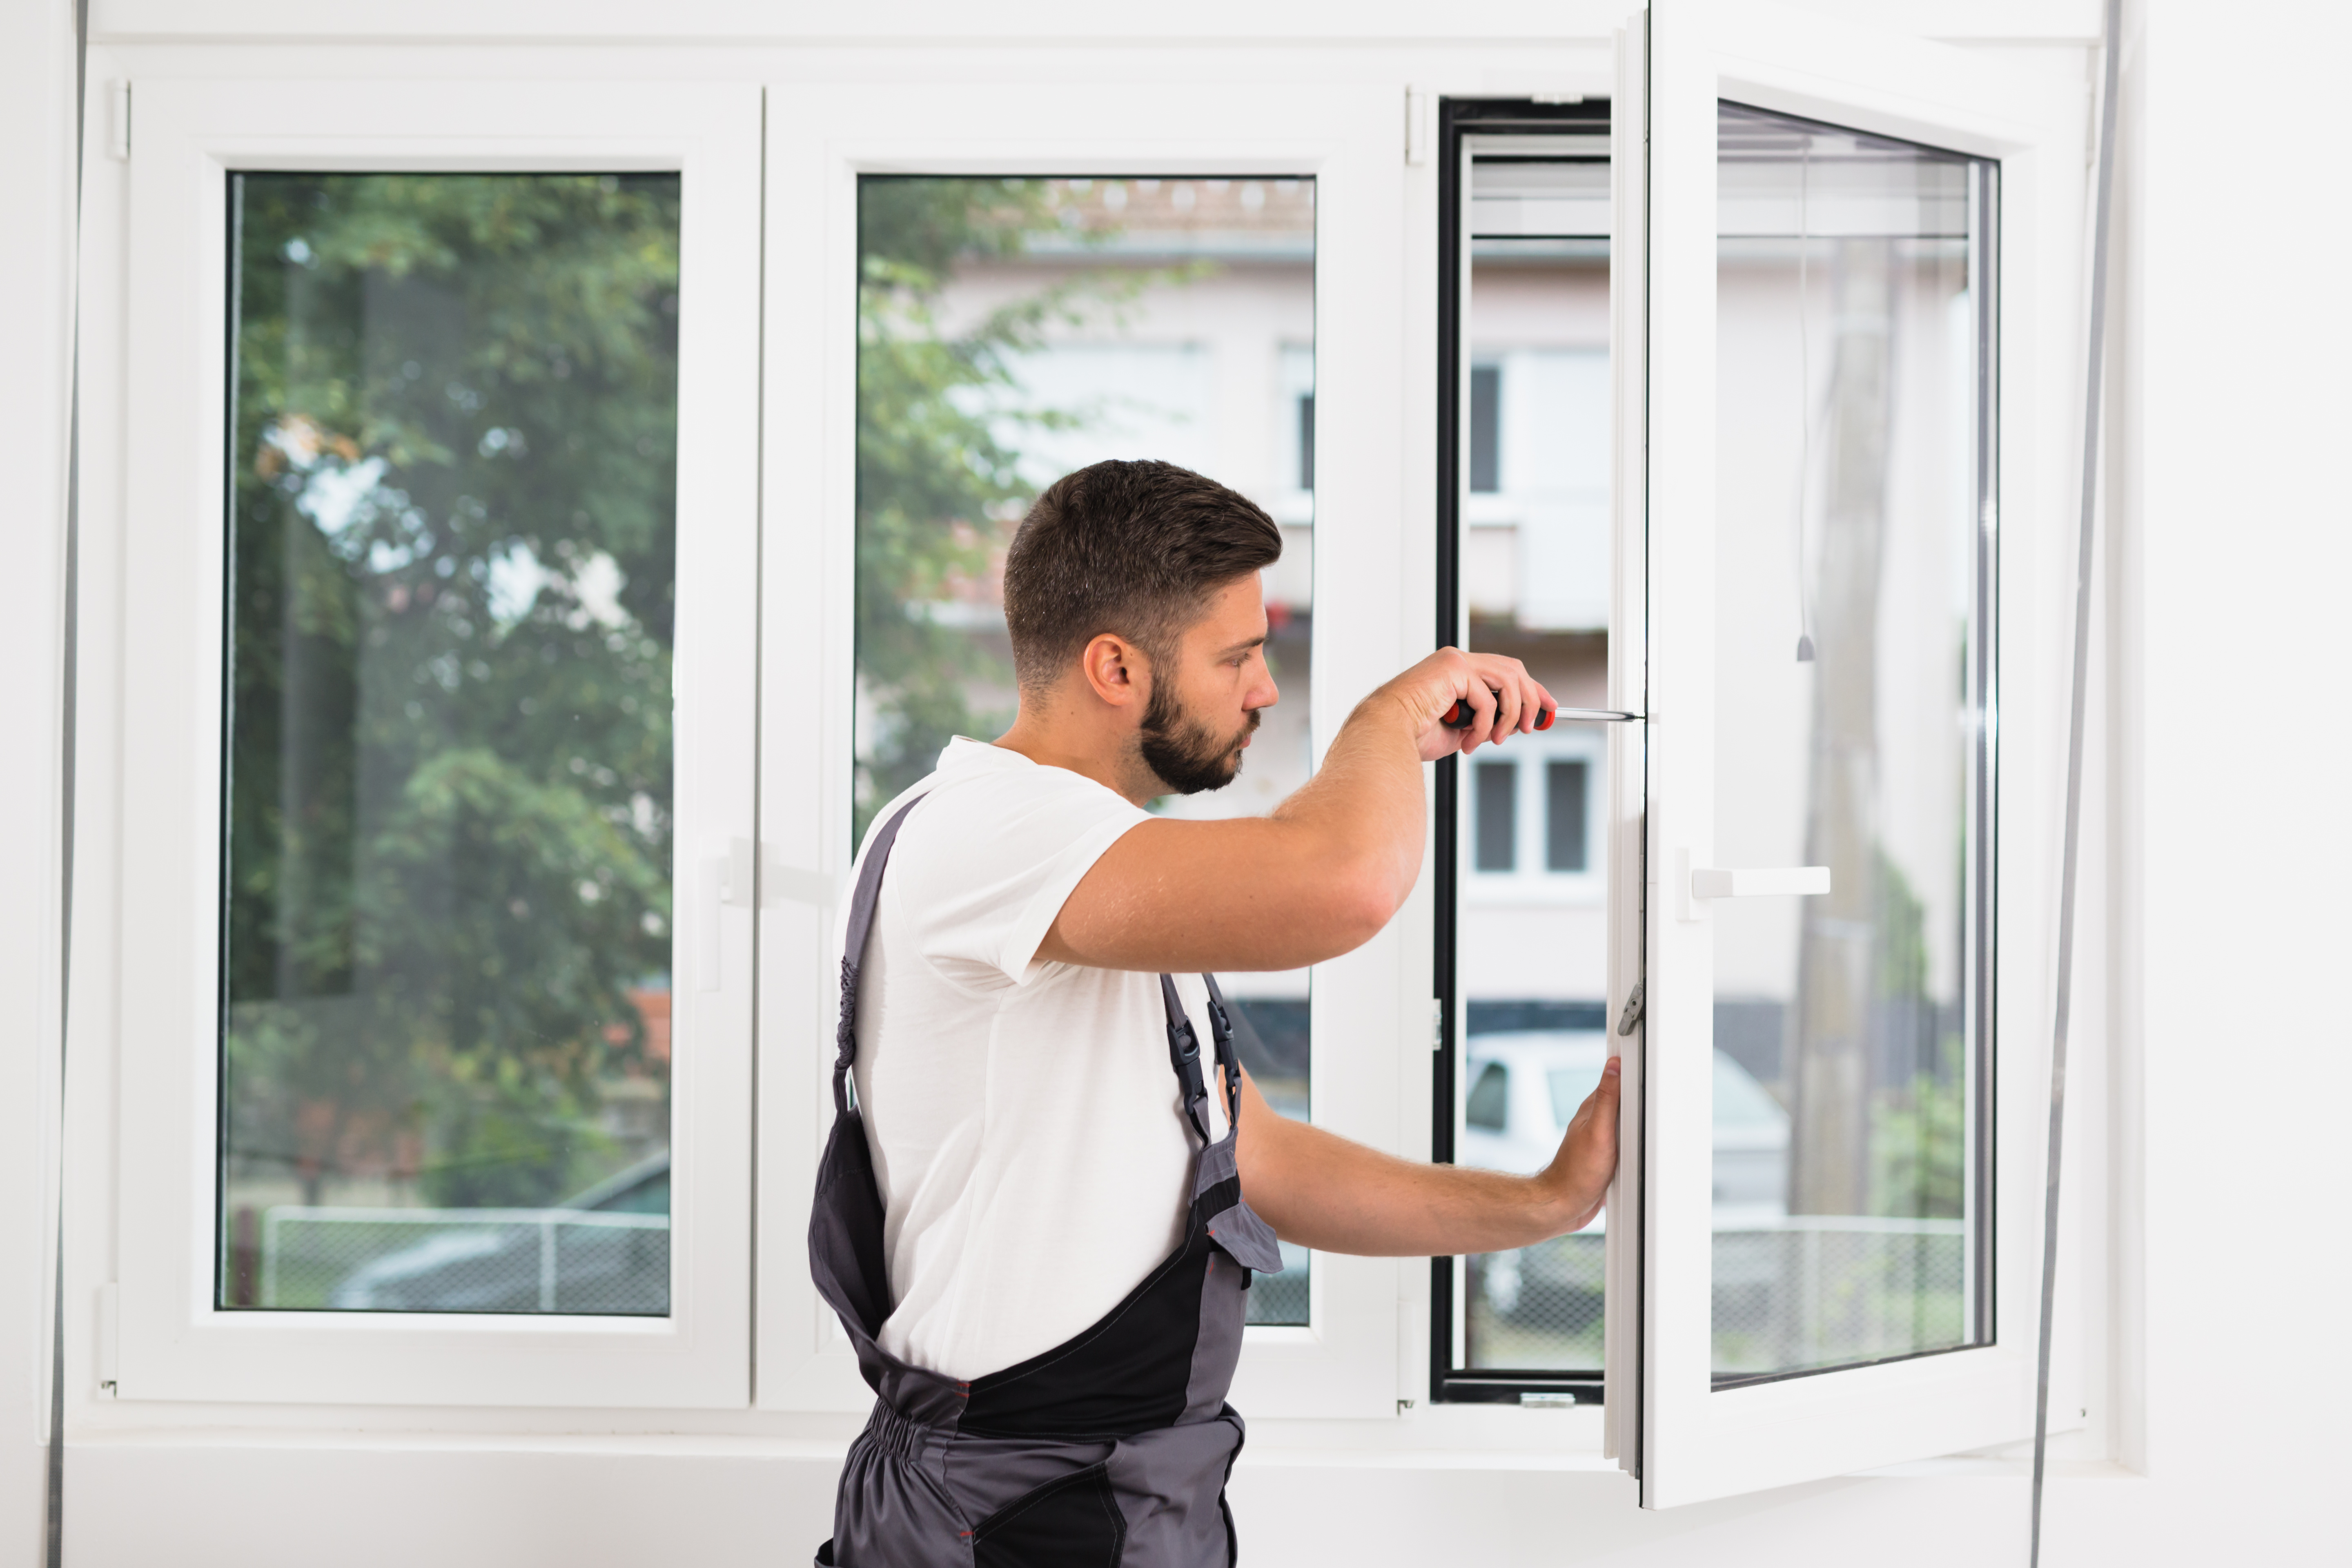 Handwerker im weißen Hemd und mit Hosenträgern justiert ein Fenster in einem hellen Raum. Er konzentriert sich auf die Feineinstellung des Fenstergriffs.